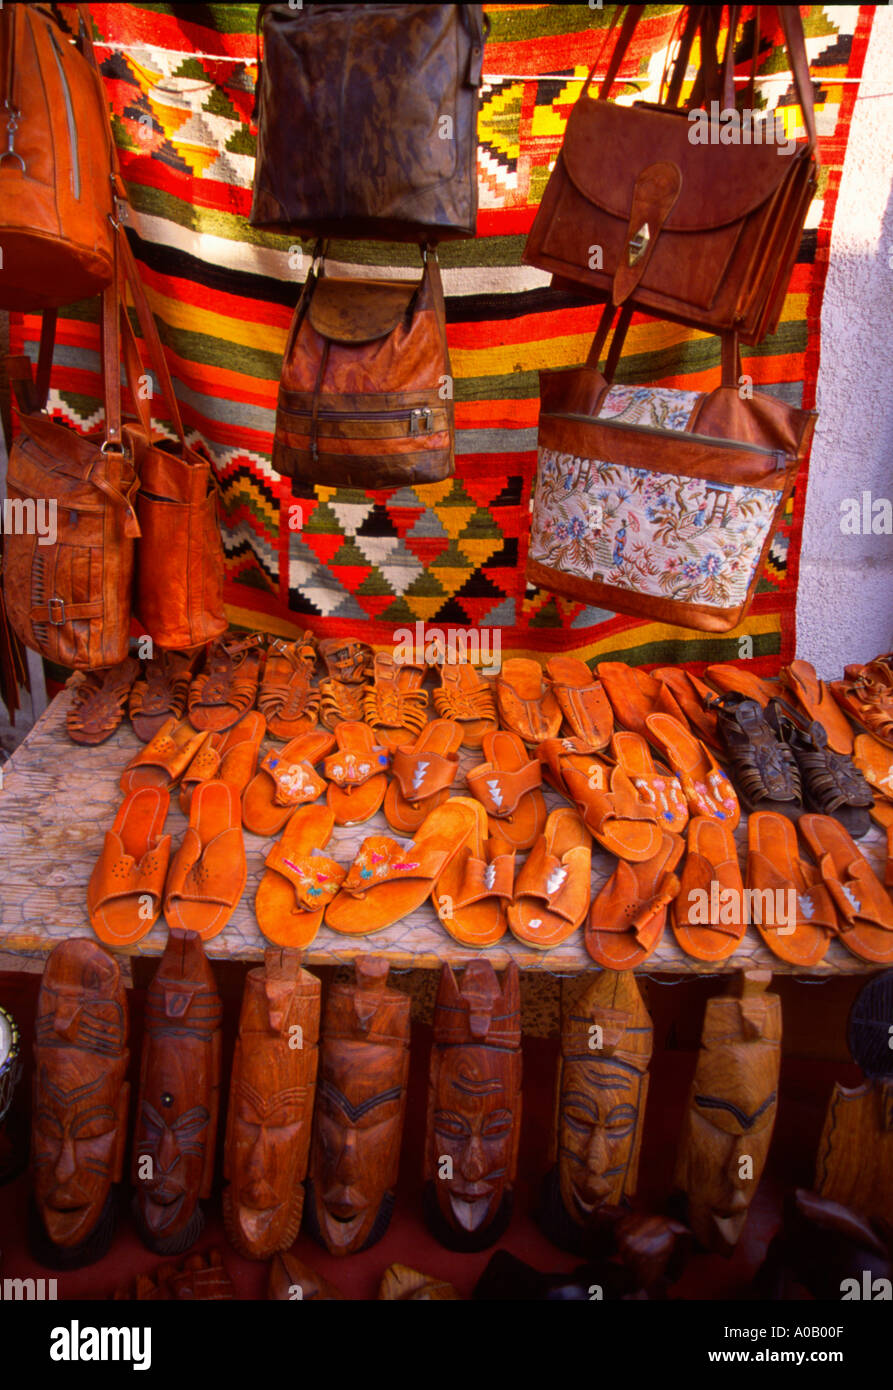 Leder Taschen Schuhe Sandalen Holzstatuen Teppiche außerhalb Store-Display  Tunesien 1142 Stockfotografie - Alamy